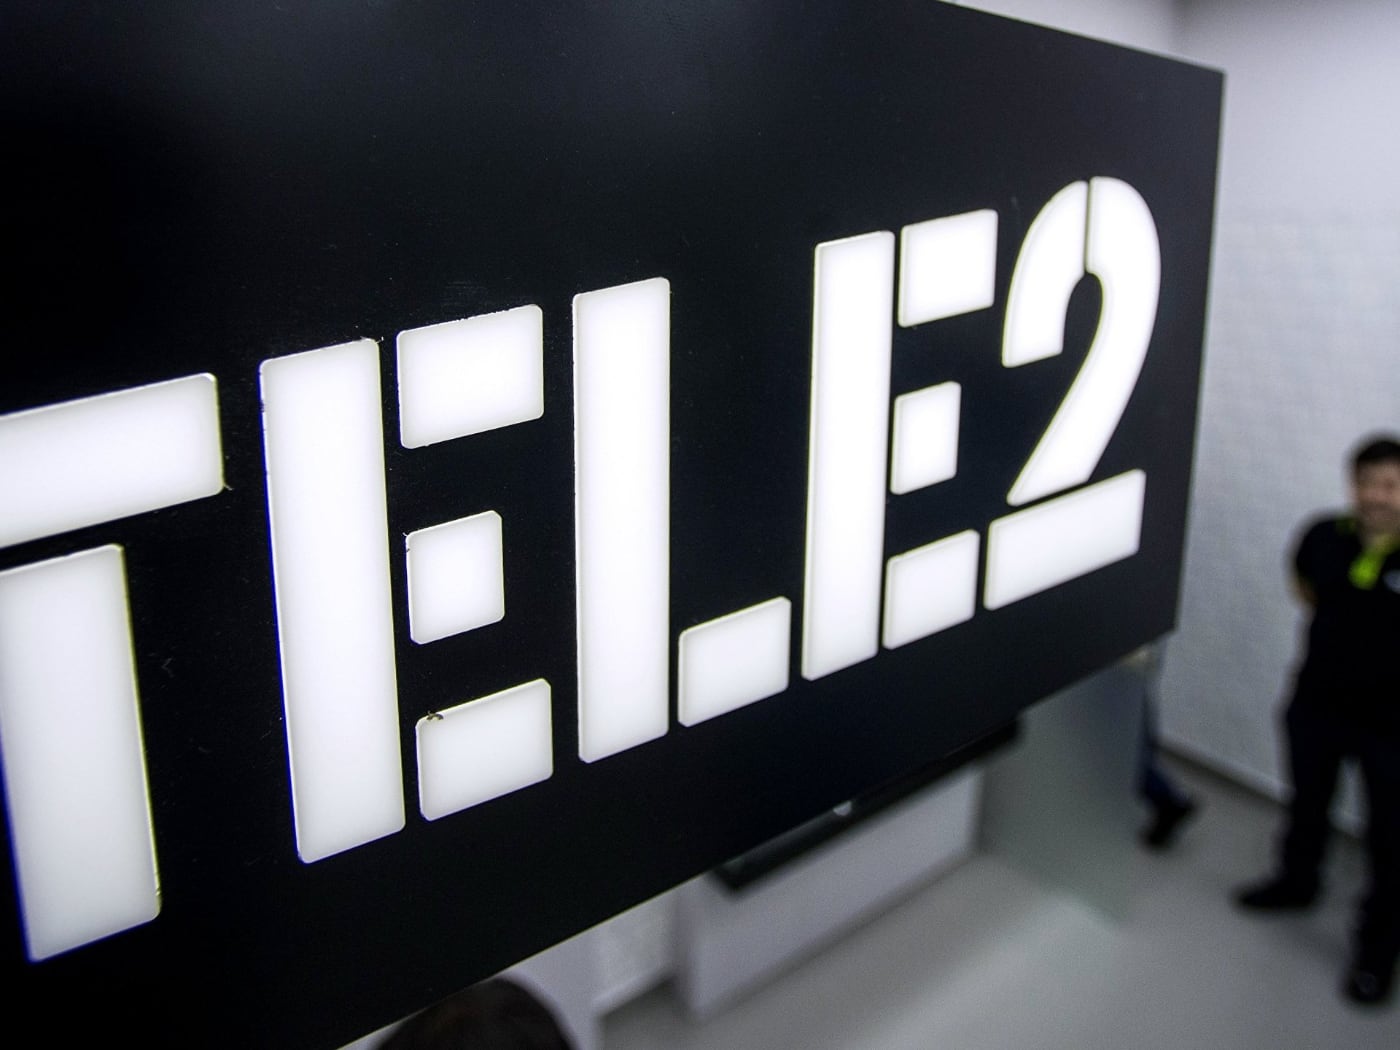 Tele2 повысит цены на все тарифы, включая архивные, на 10% с января